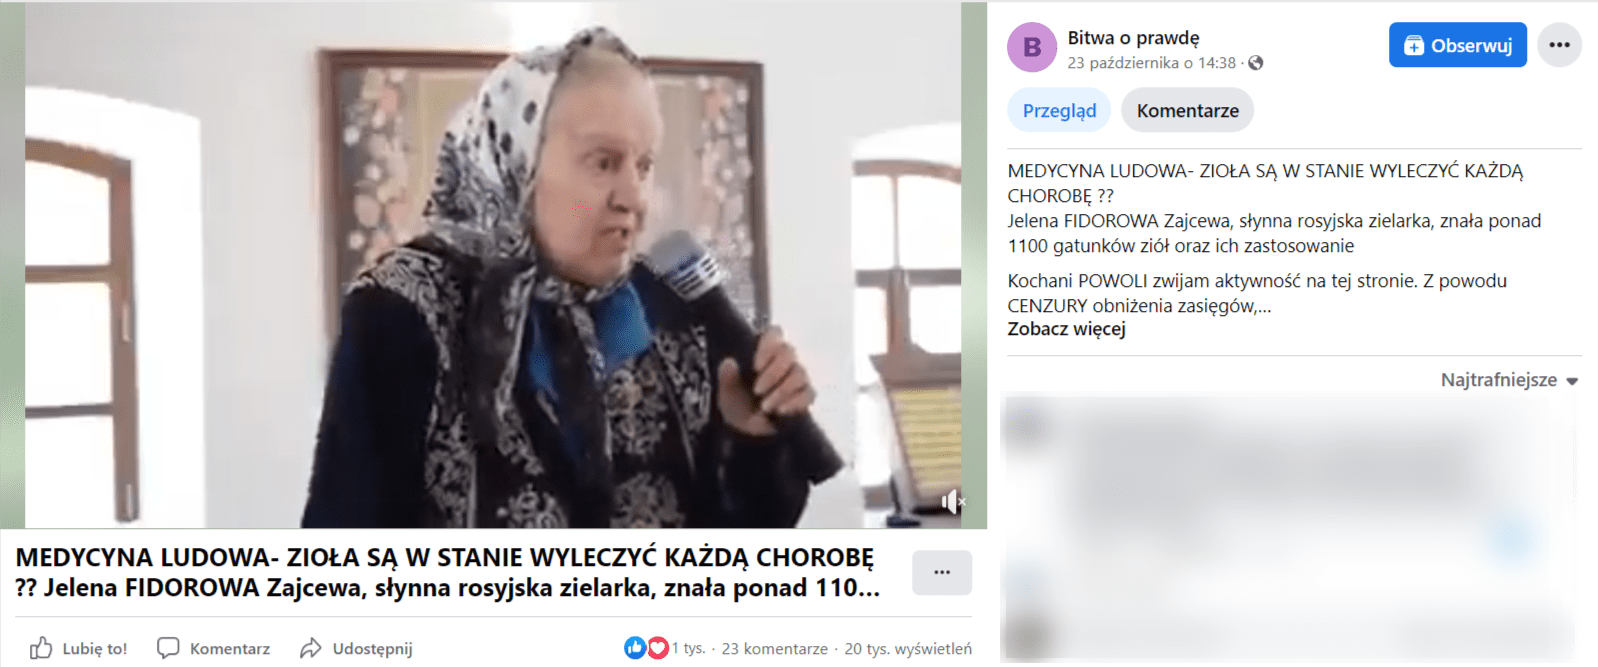 Zrzut ekranu wpisu na Facebooku, do którego dołączono nagranie z rosyjską zielarką. Na stopklatce widać zielarkę Elenę Fedorovnę, która przemawia do zgromadzonych w niewielkiej sali.